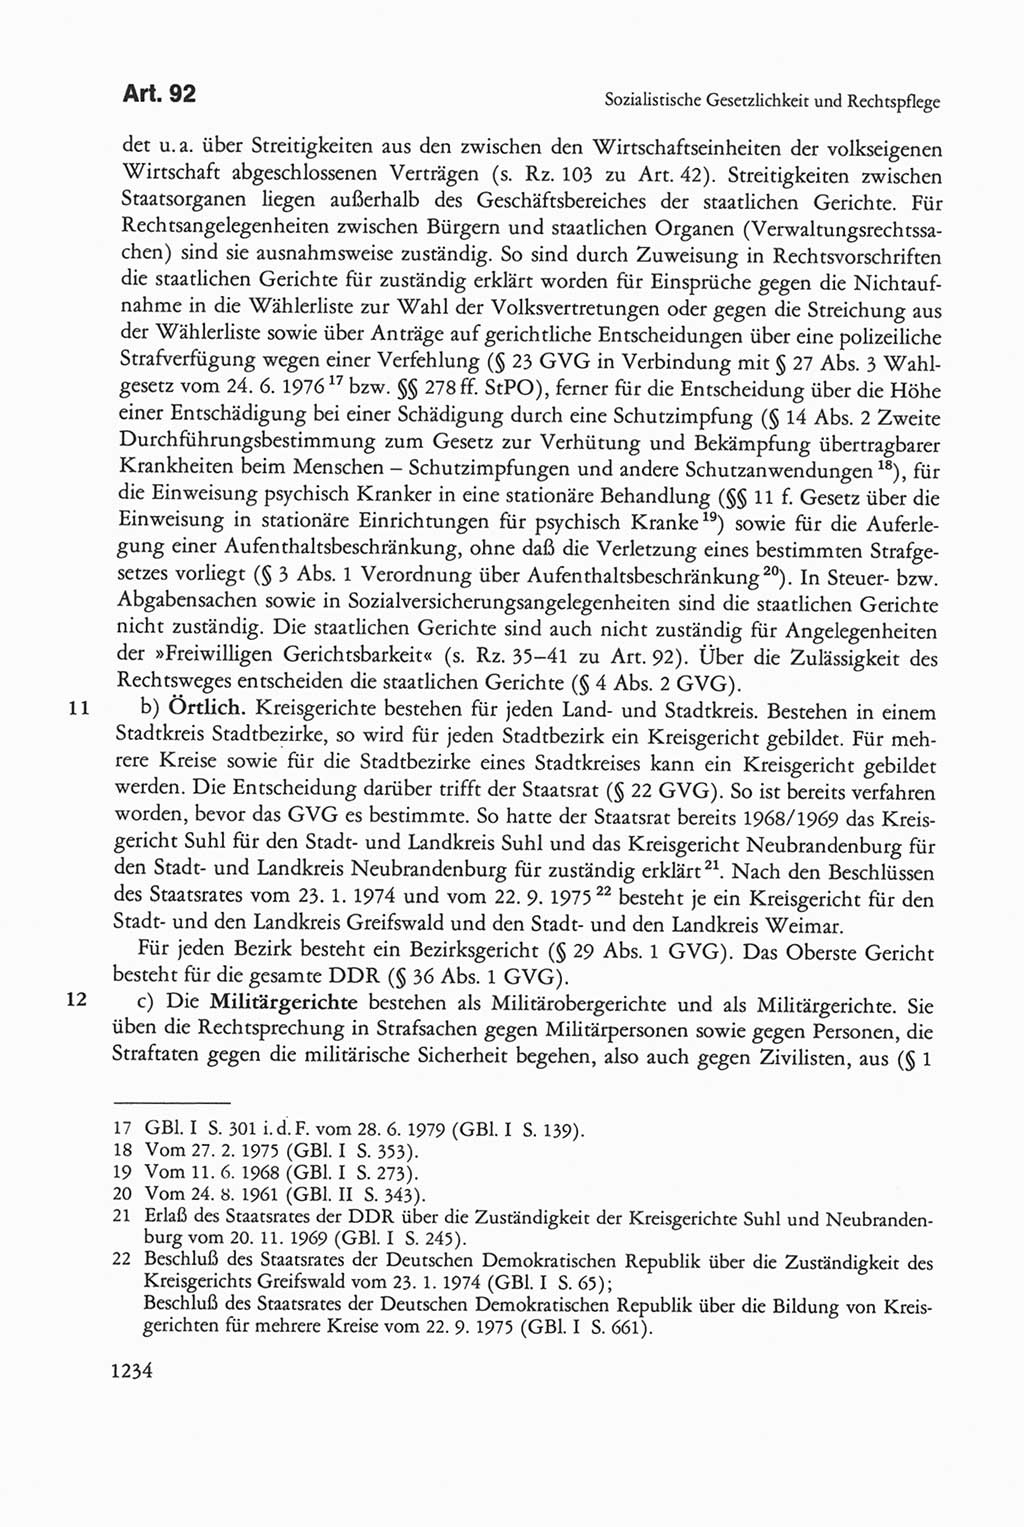 Die sozialistische Verfassung der Deutschen Demokratischen Republik (DDR), Kommentar mit einem Nachtrag 1997, Seite 1234 (Soz. Verf. DDR Komm. Nachtr. 1997, S. 1234)